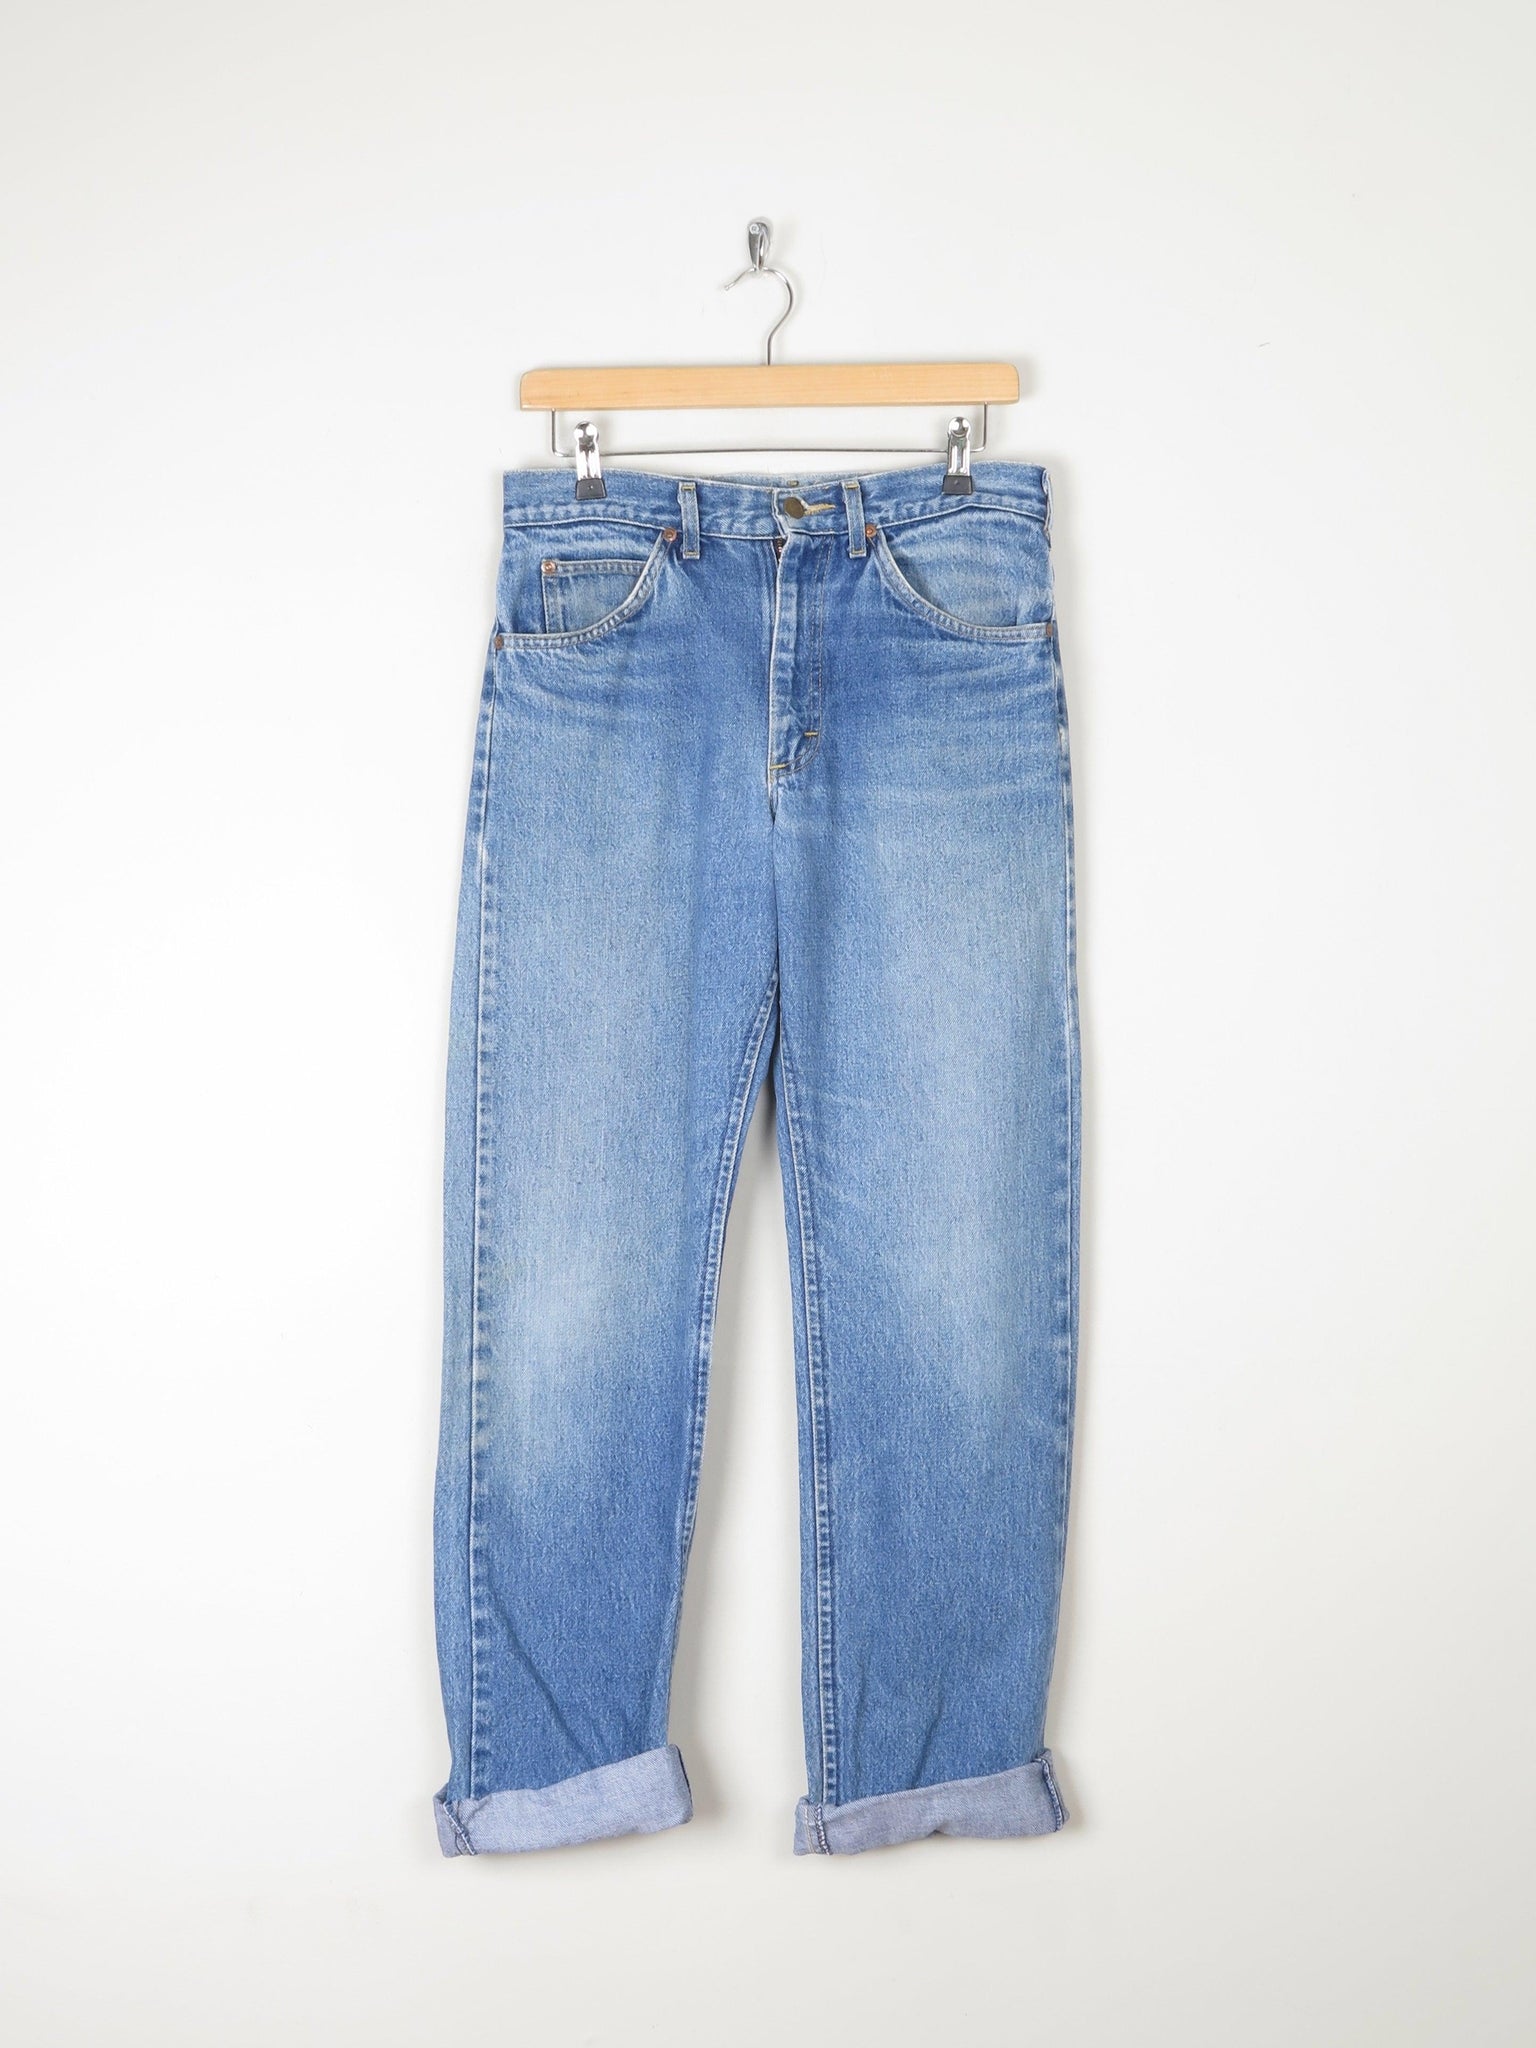 Men's Fit Vintage Lee Blue Denim Jeans Relaxed Fit Jeans 31"/34L - The Harlequin